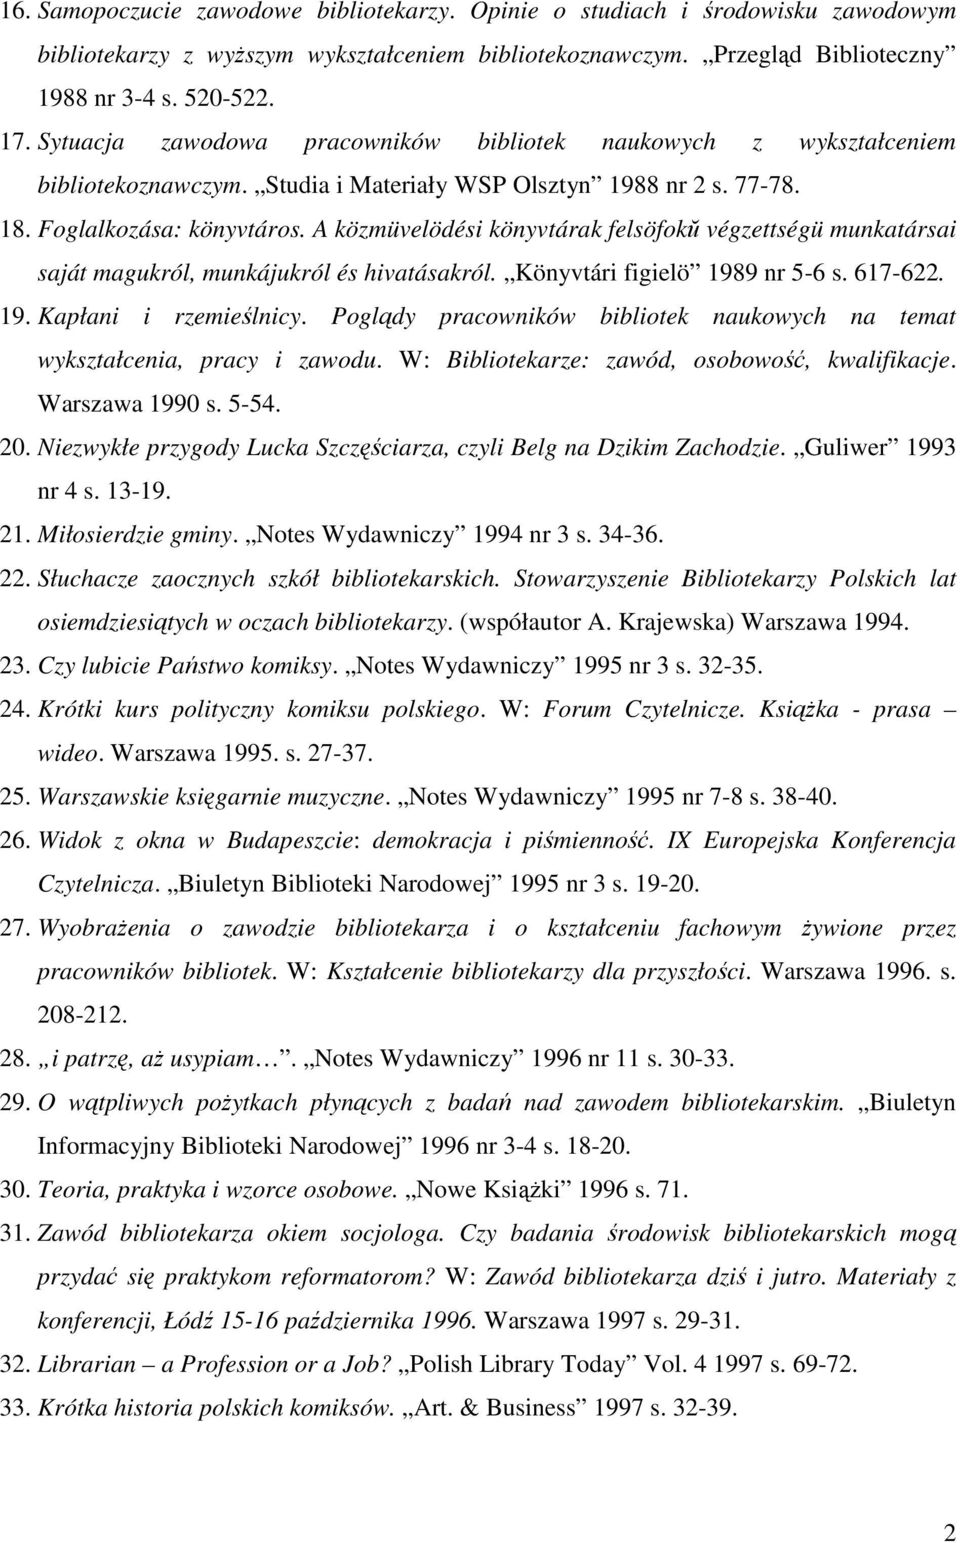 A közmüvelödési könyvtárak felsöfokŭ végzettségü munkatársai saját magukról, munkájukról és hivatásakról. Könyvtári figielö 1989 nr 5-6 s. 617-622. 19. Kapłani i rzemieślnicy.